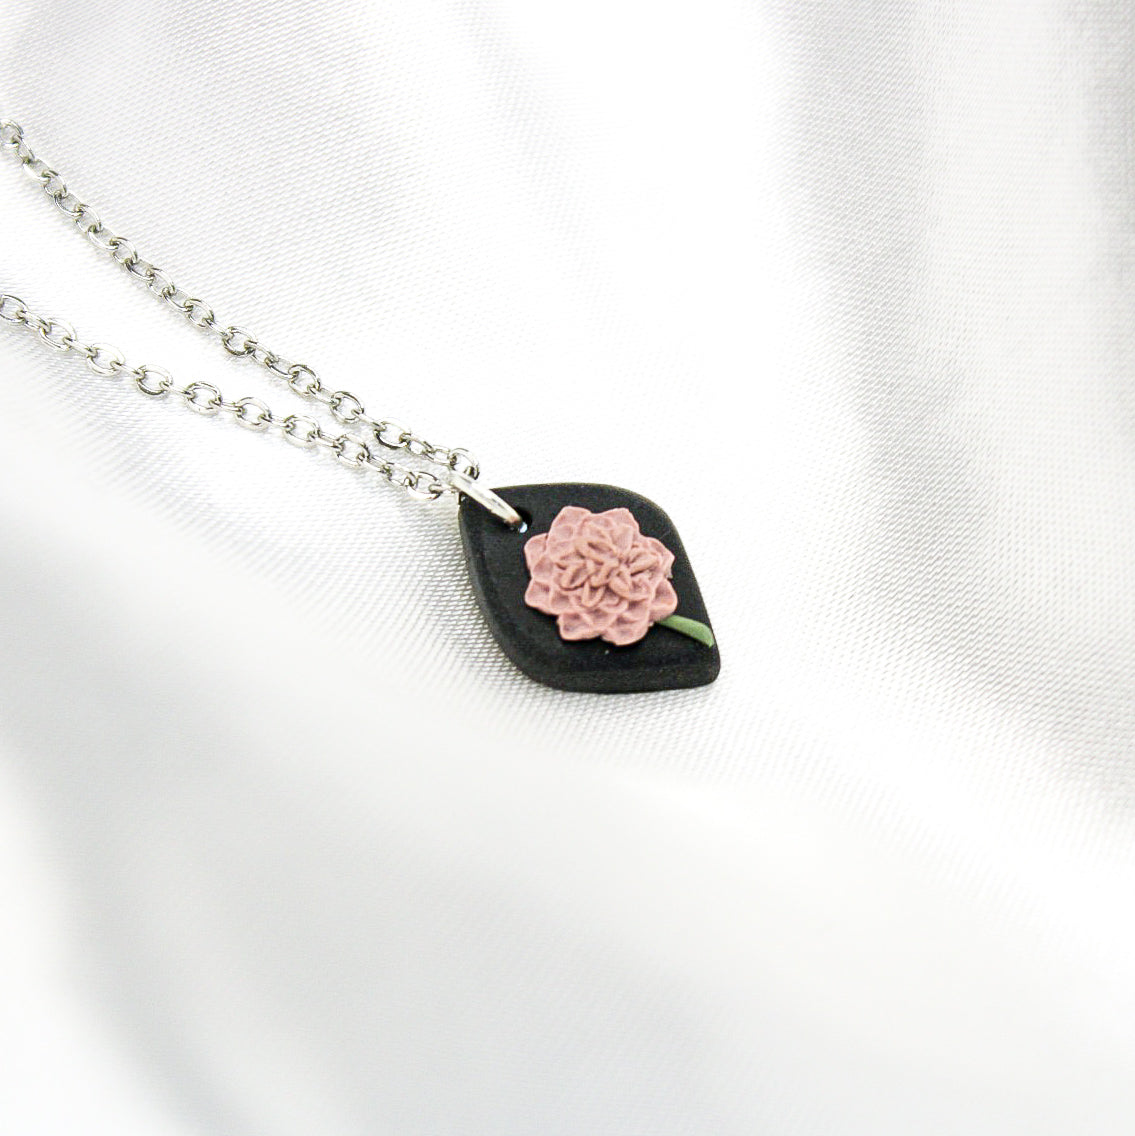 Silver November Birth Flower Necklace | Chrysanthemum Flower Necklace Handmade in NZ